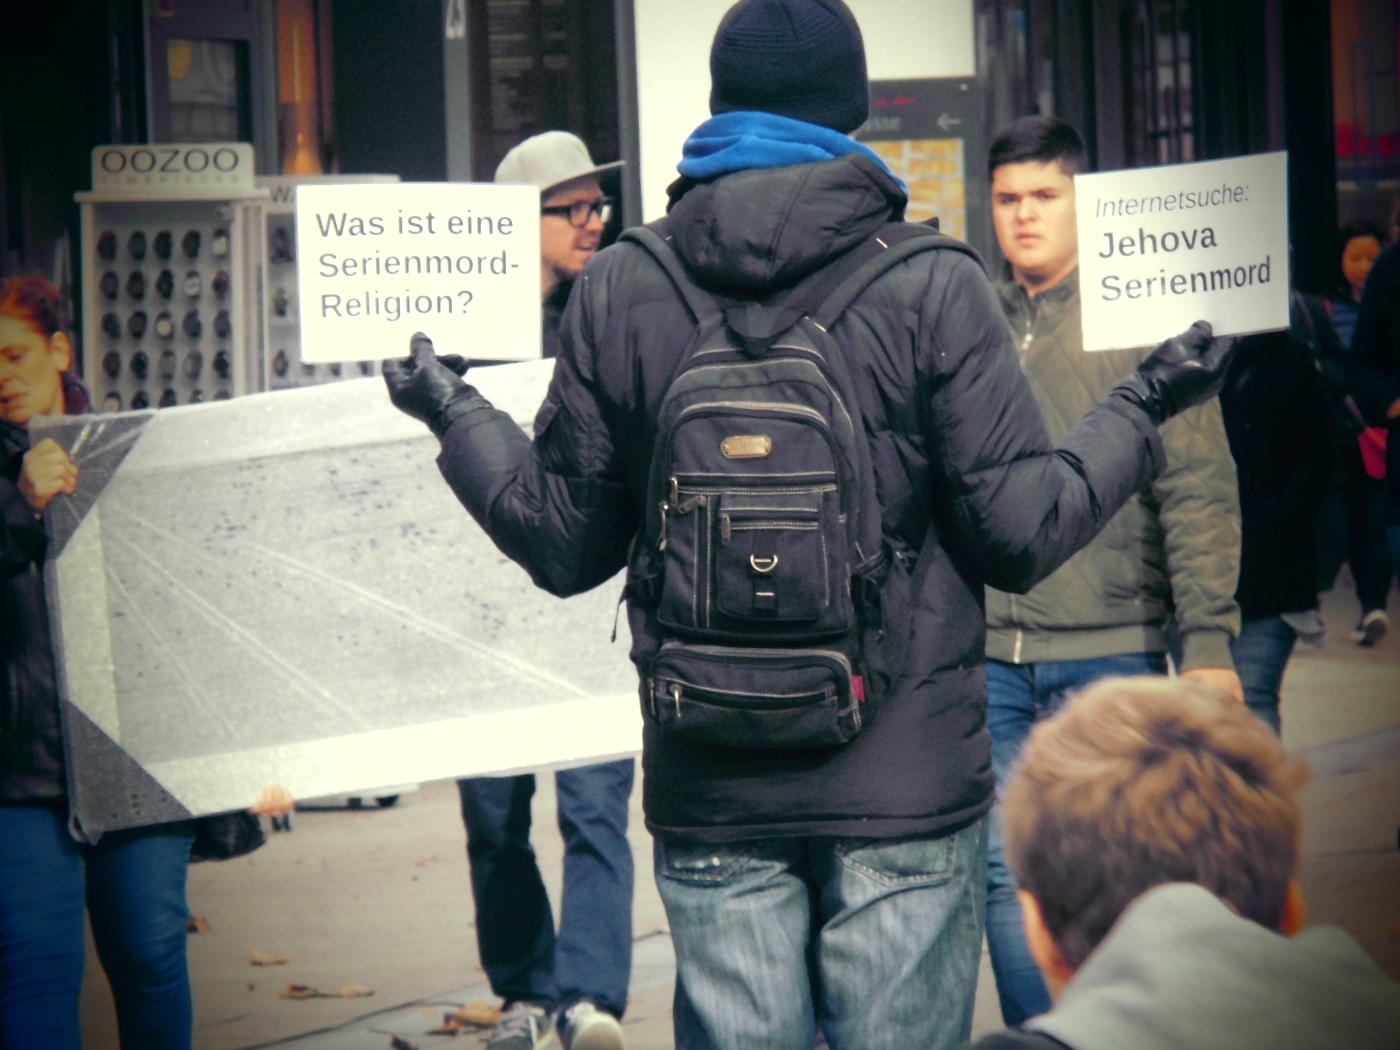 Heilbronn: Große Reparatur-Aktion der Zeugen Jehovas